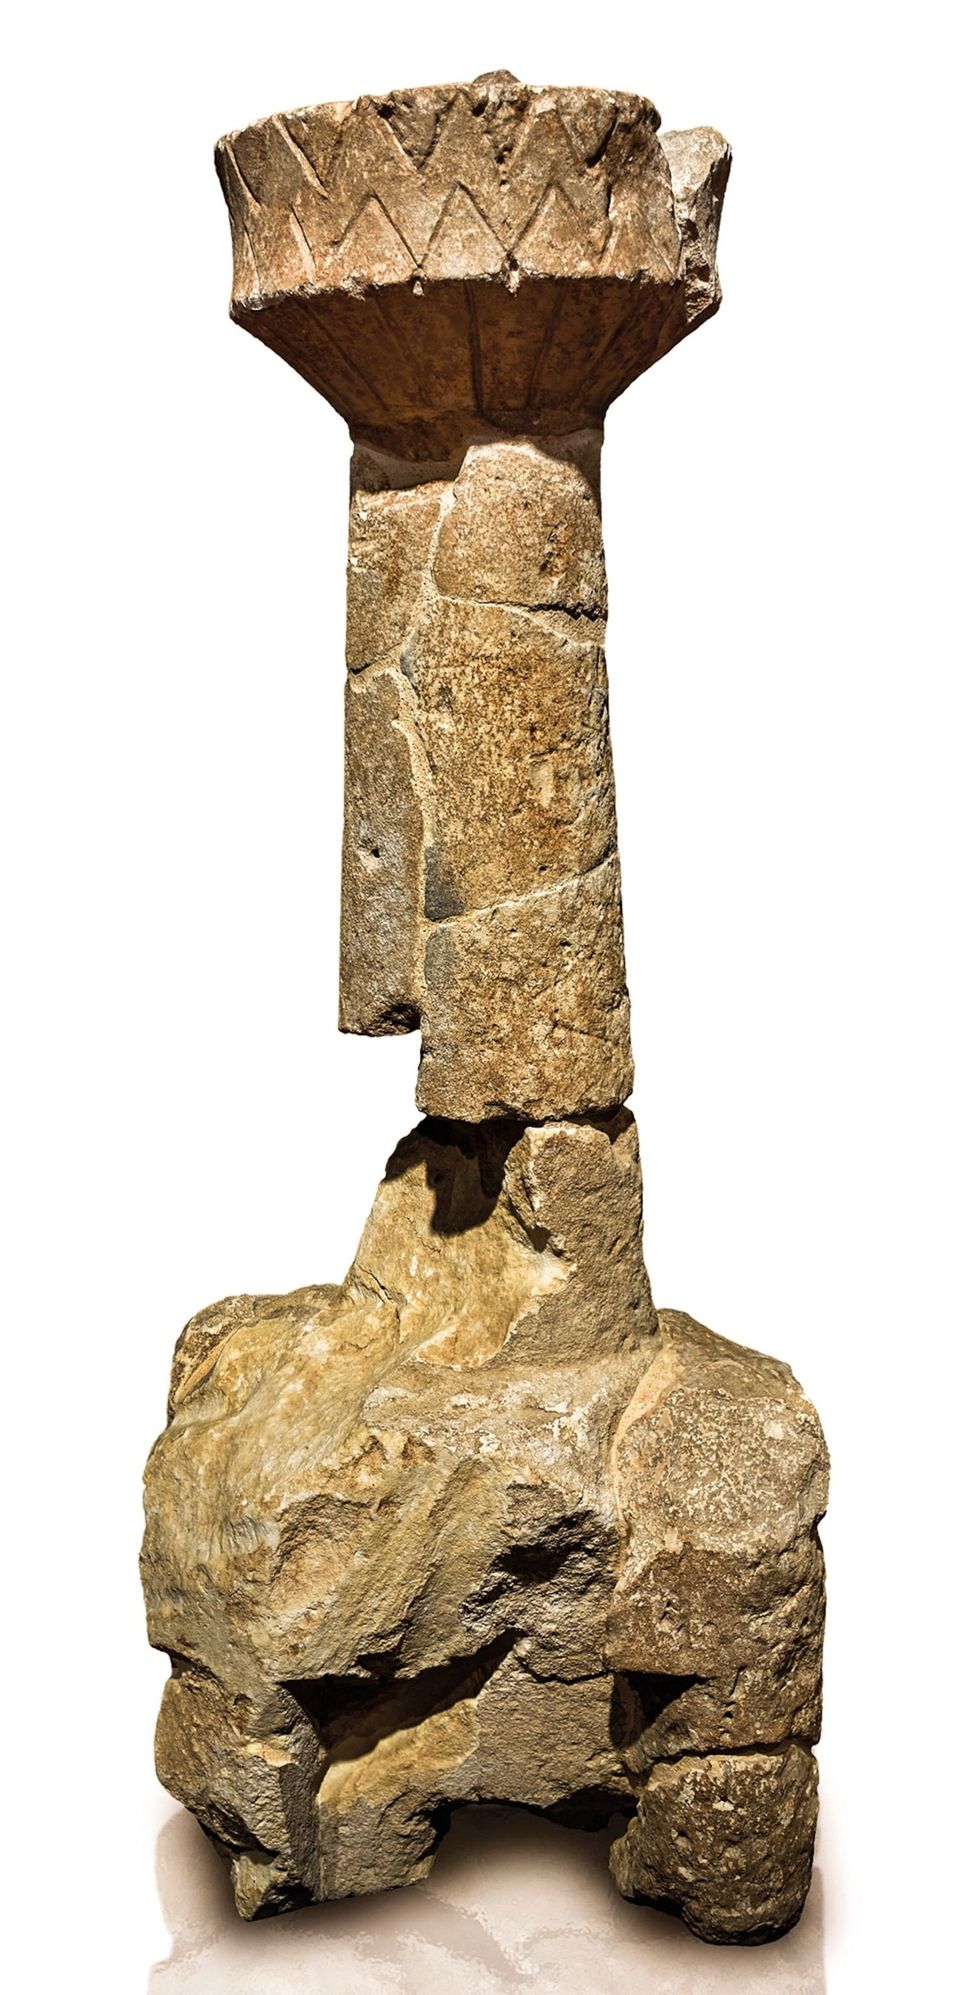 Naast de enorme standbeelden werden er in Monte Prama ook schaalmodellen van nuraghi gevonden zoals deze centrale toren van een nuraghiminiatuur